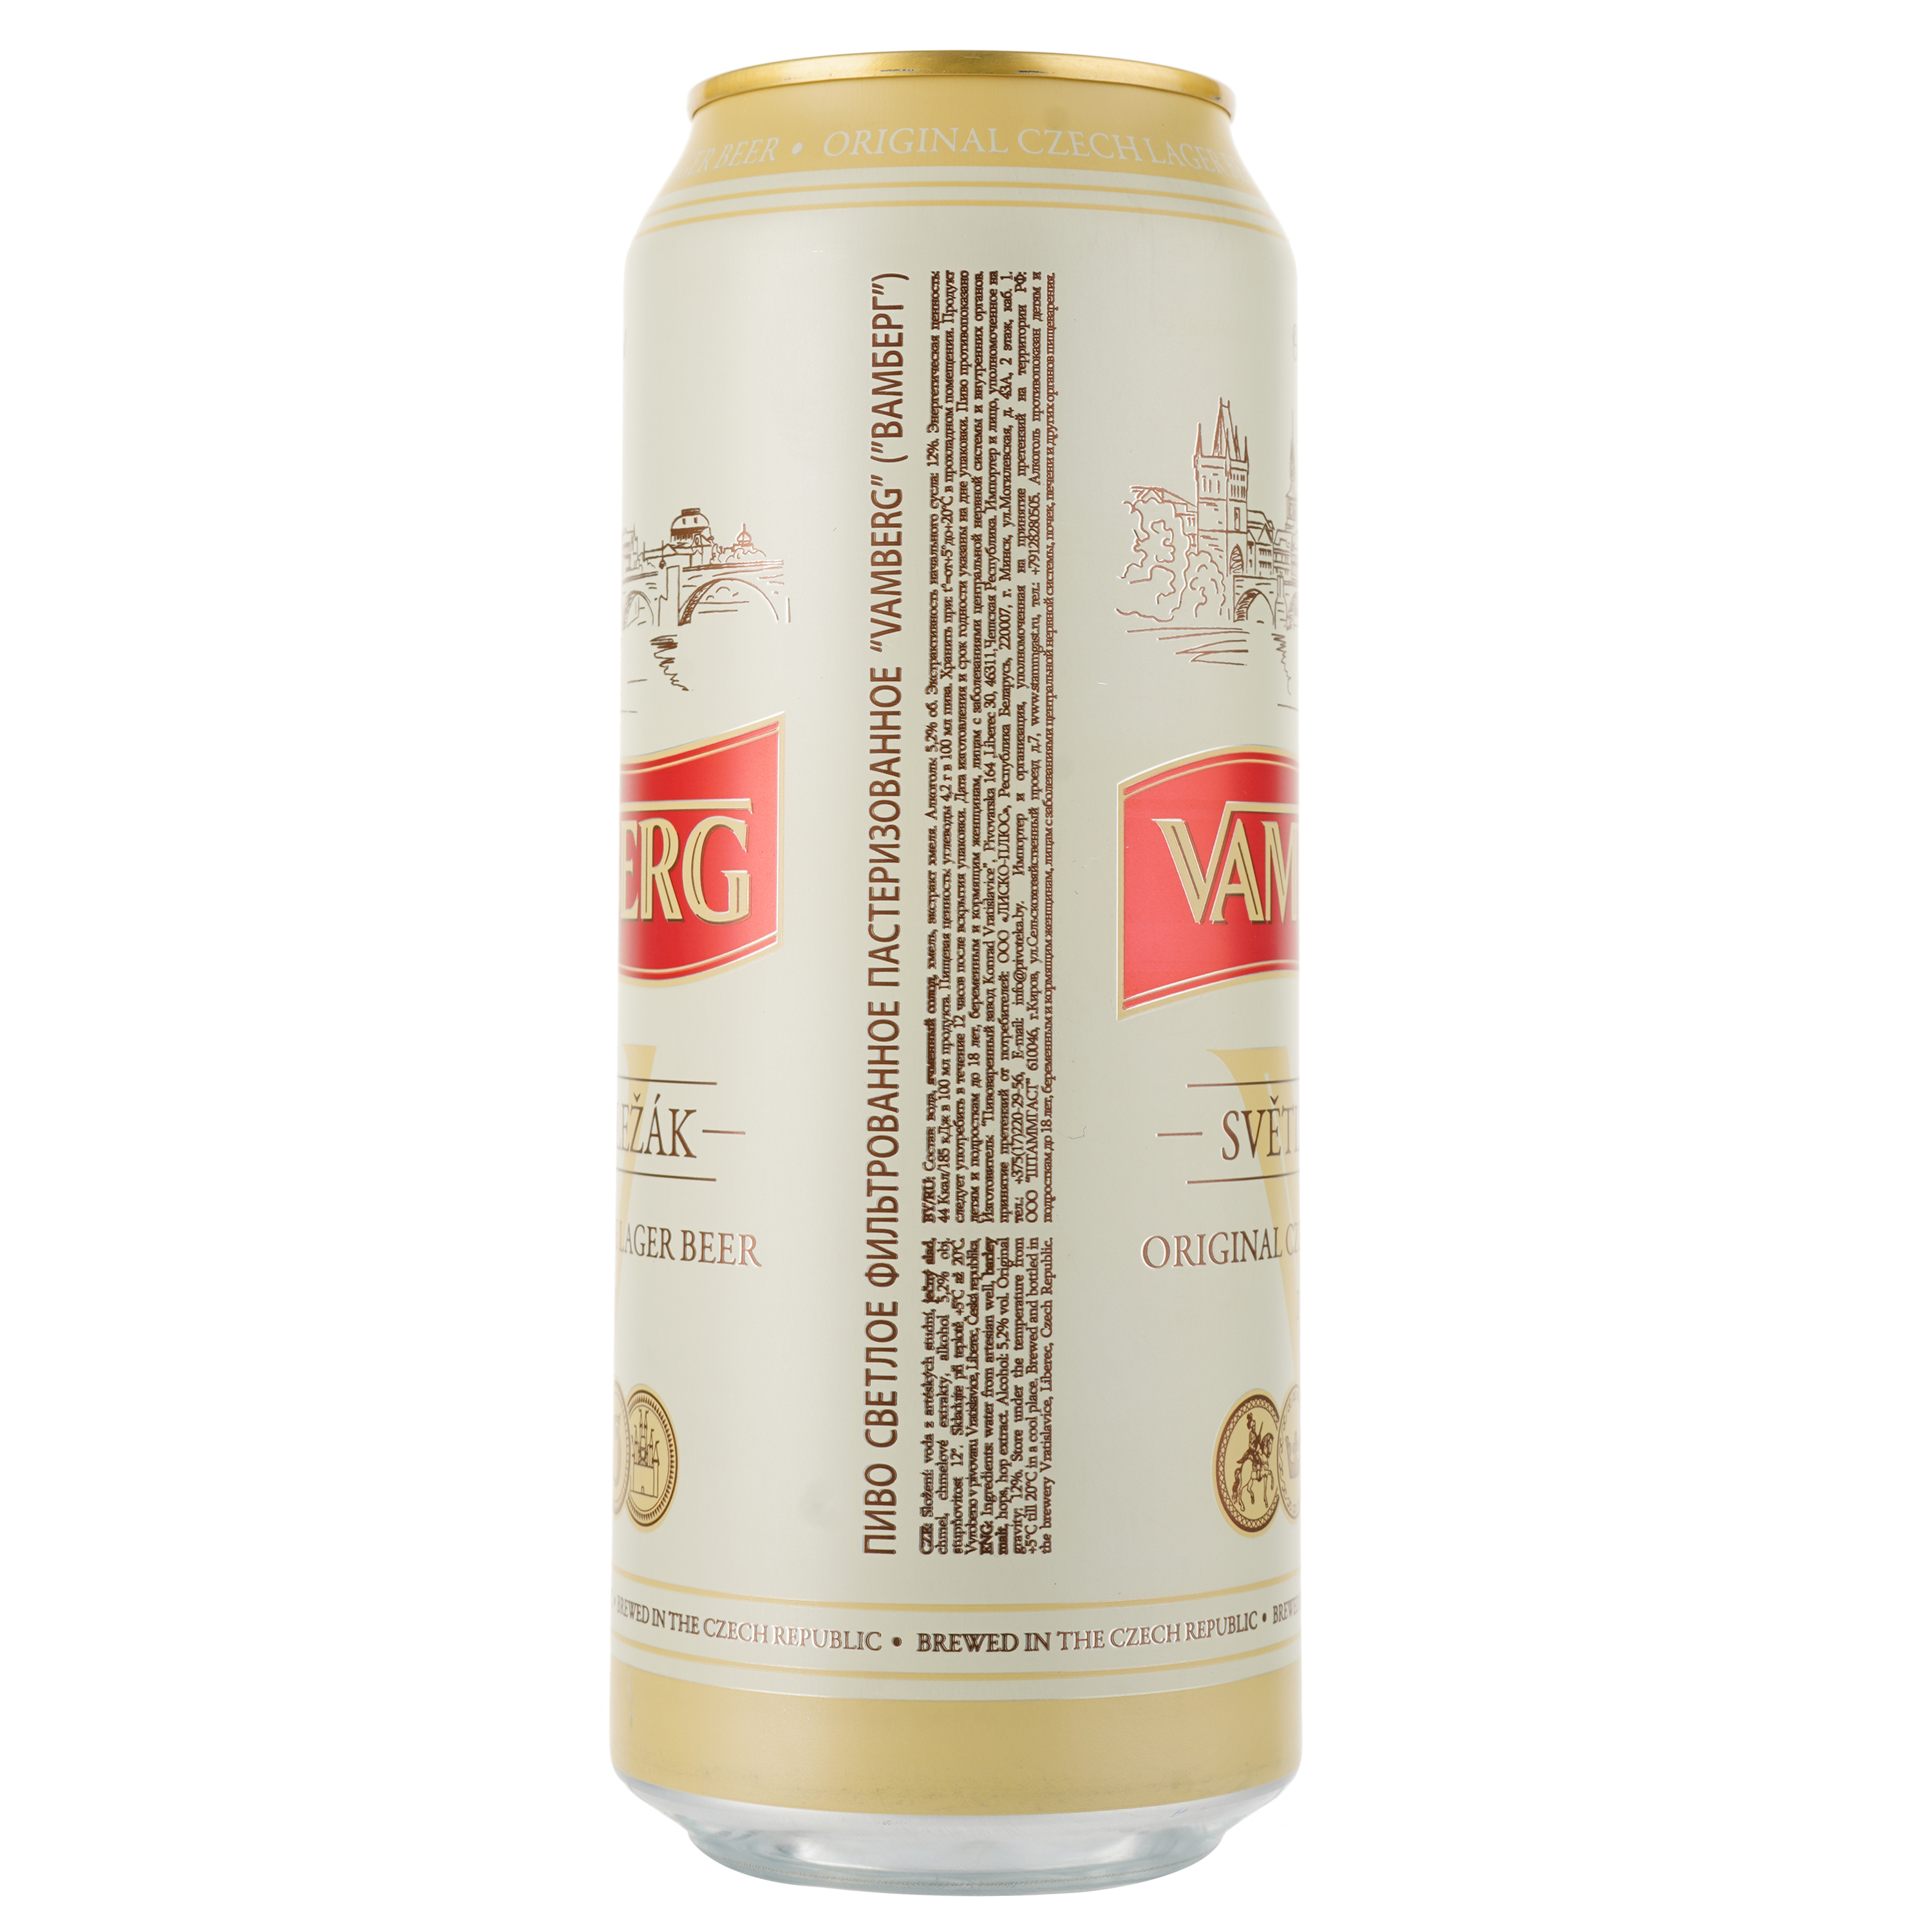 Пиво Vamberg Lager, світле, фільтроване, 5,2%, з/б, 0,5 л - фото 2